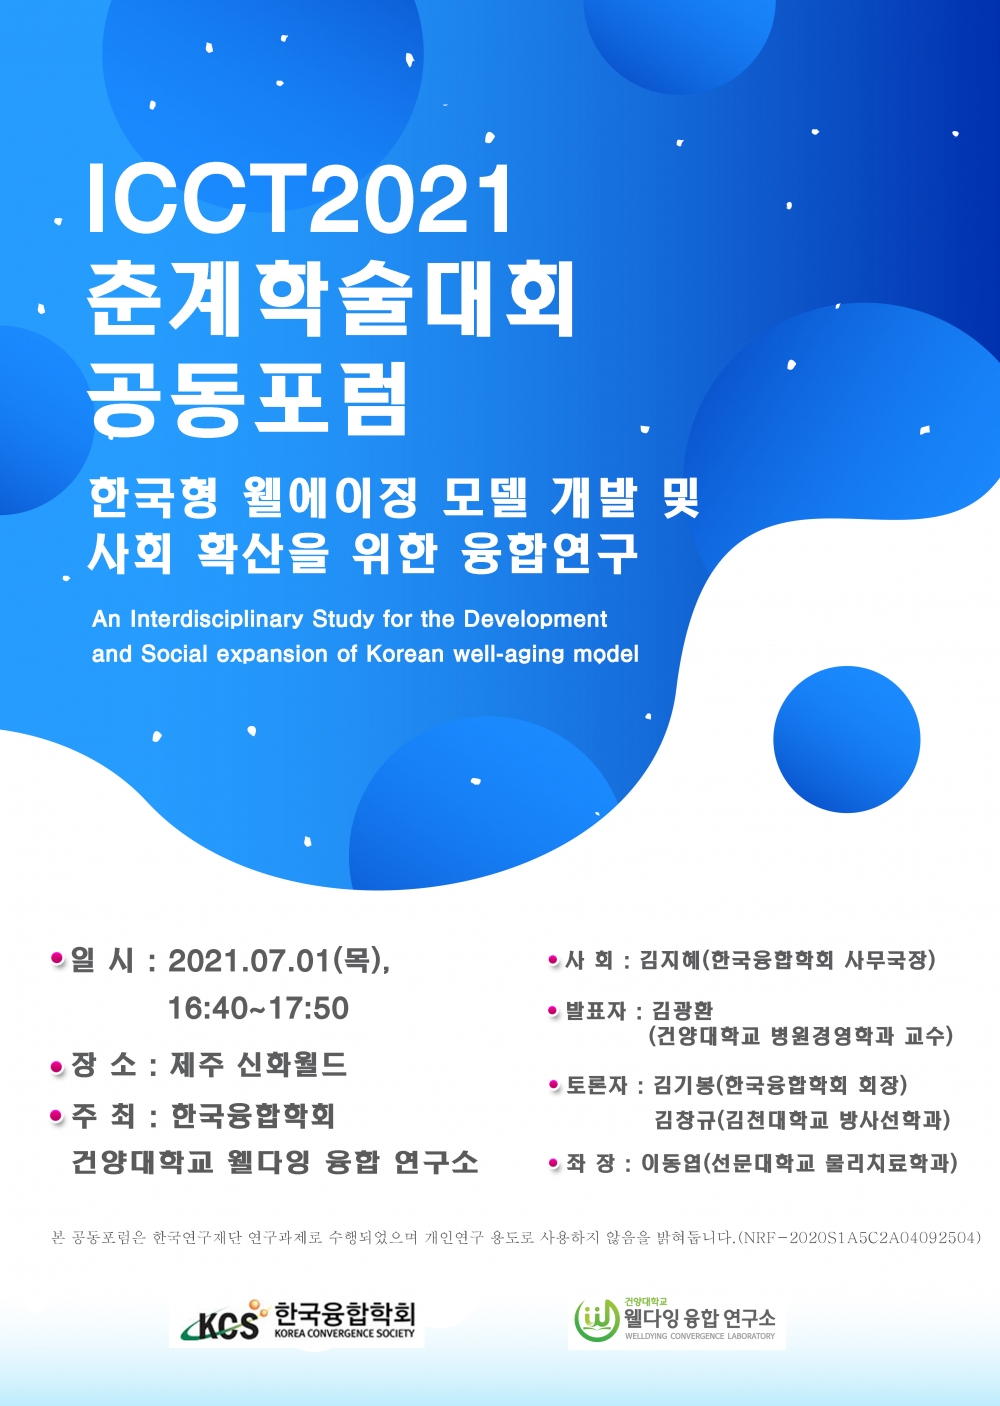 2021년 7월 1일 / 한국융합학회 참석하였습니다. 